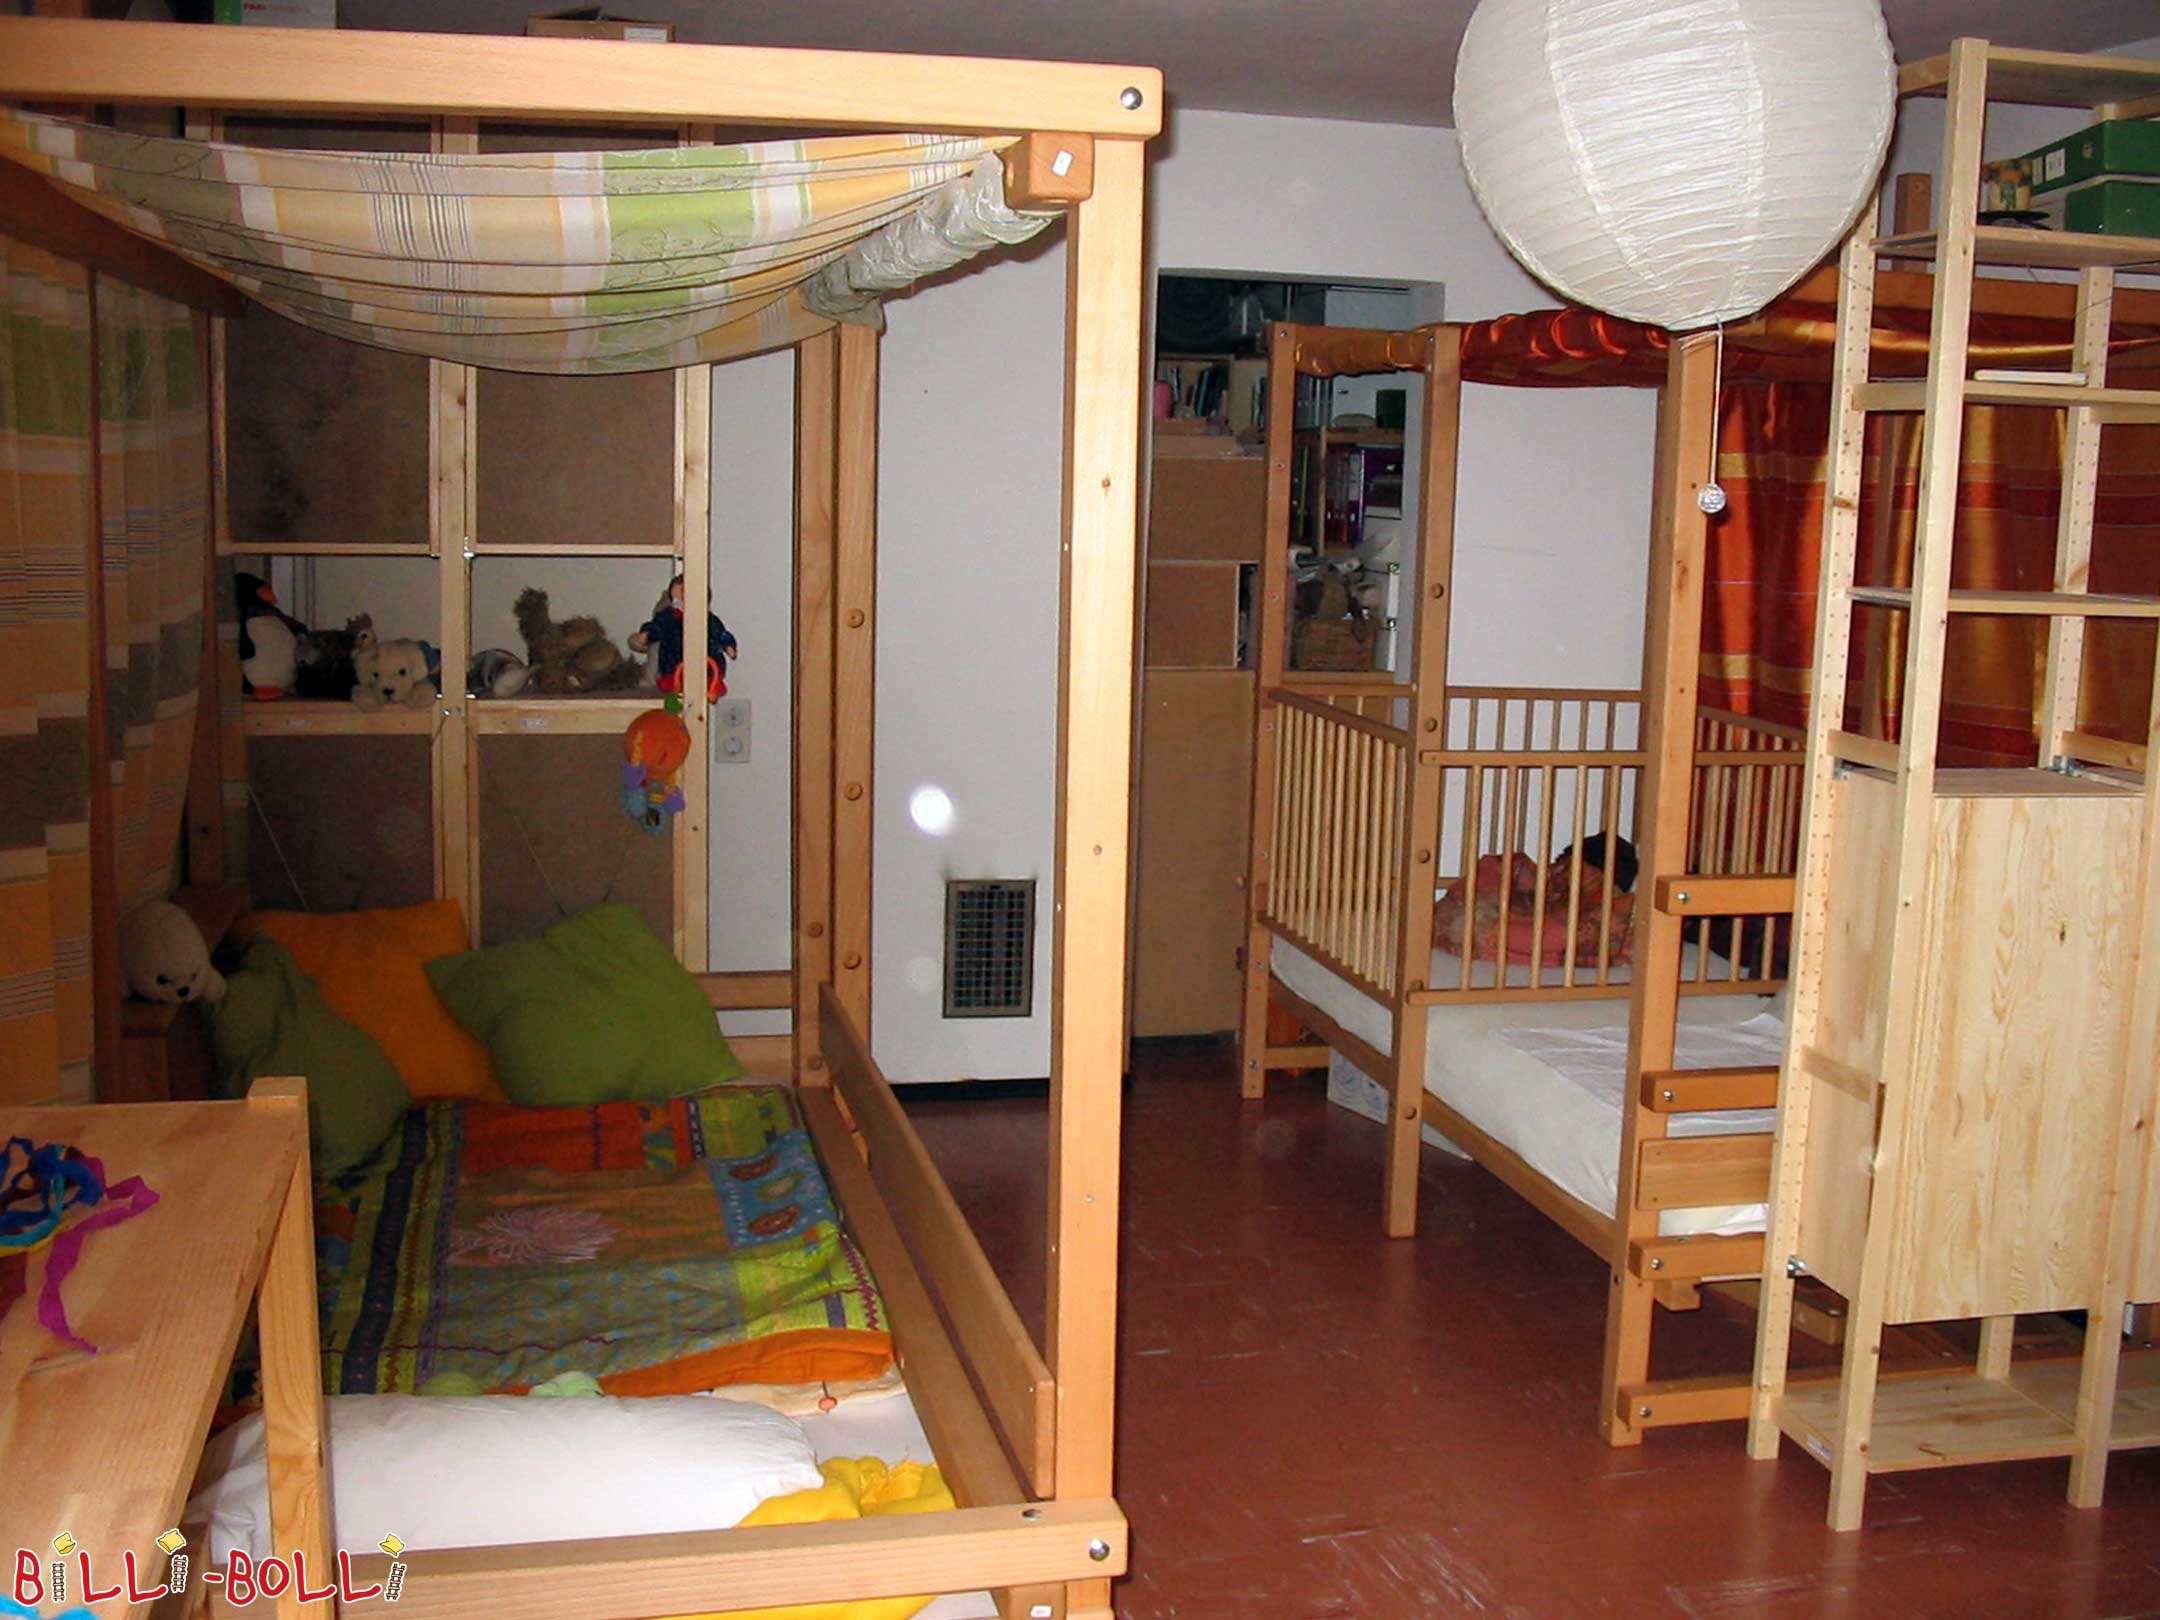 Dve podkrovné postele rastúce s dieťaťom vo výške 2, umiestnené ako … (Vysoká posteľ rastúca s dieťaťom)